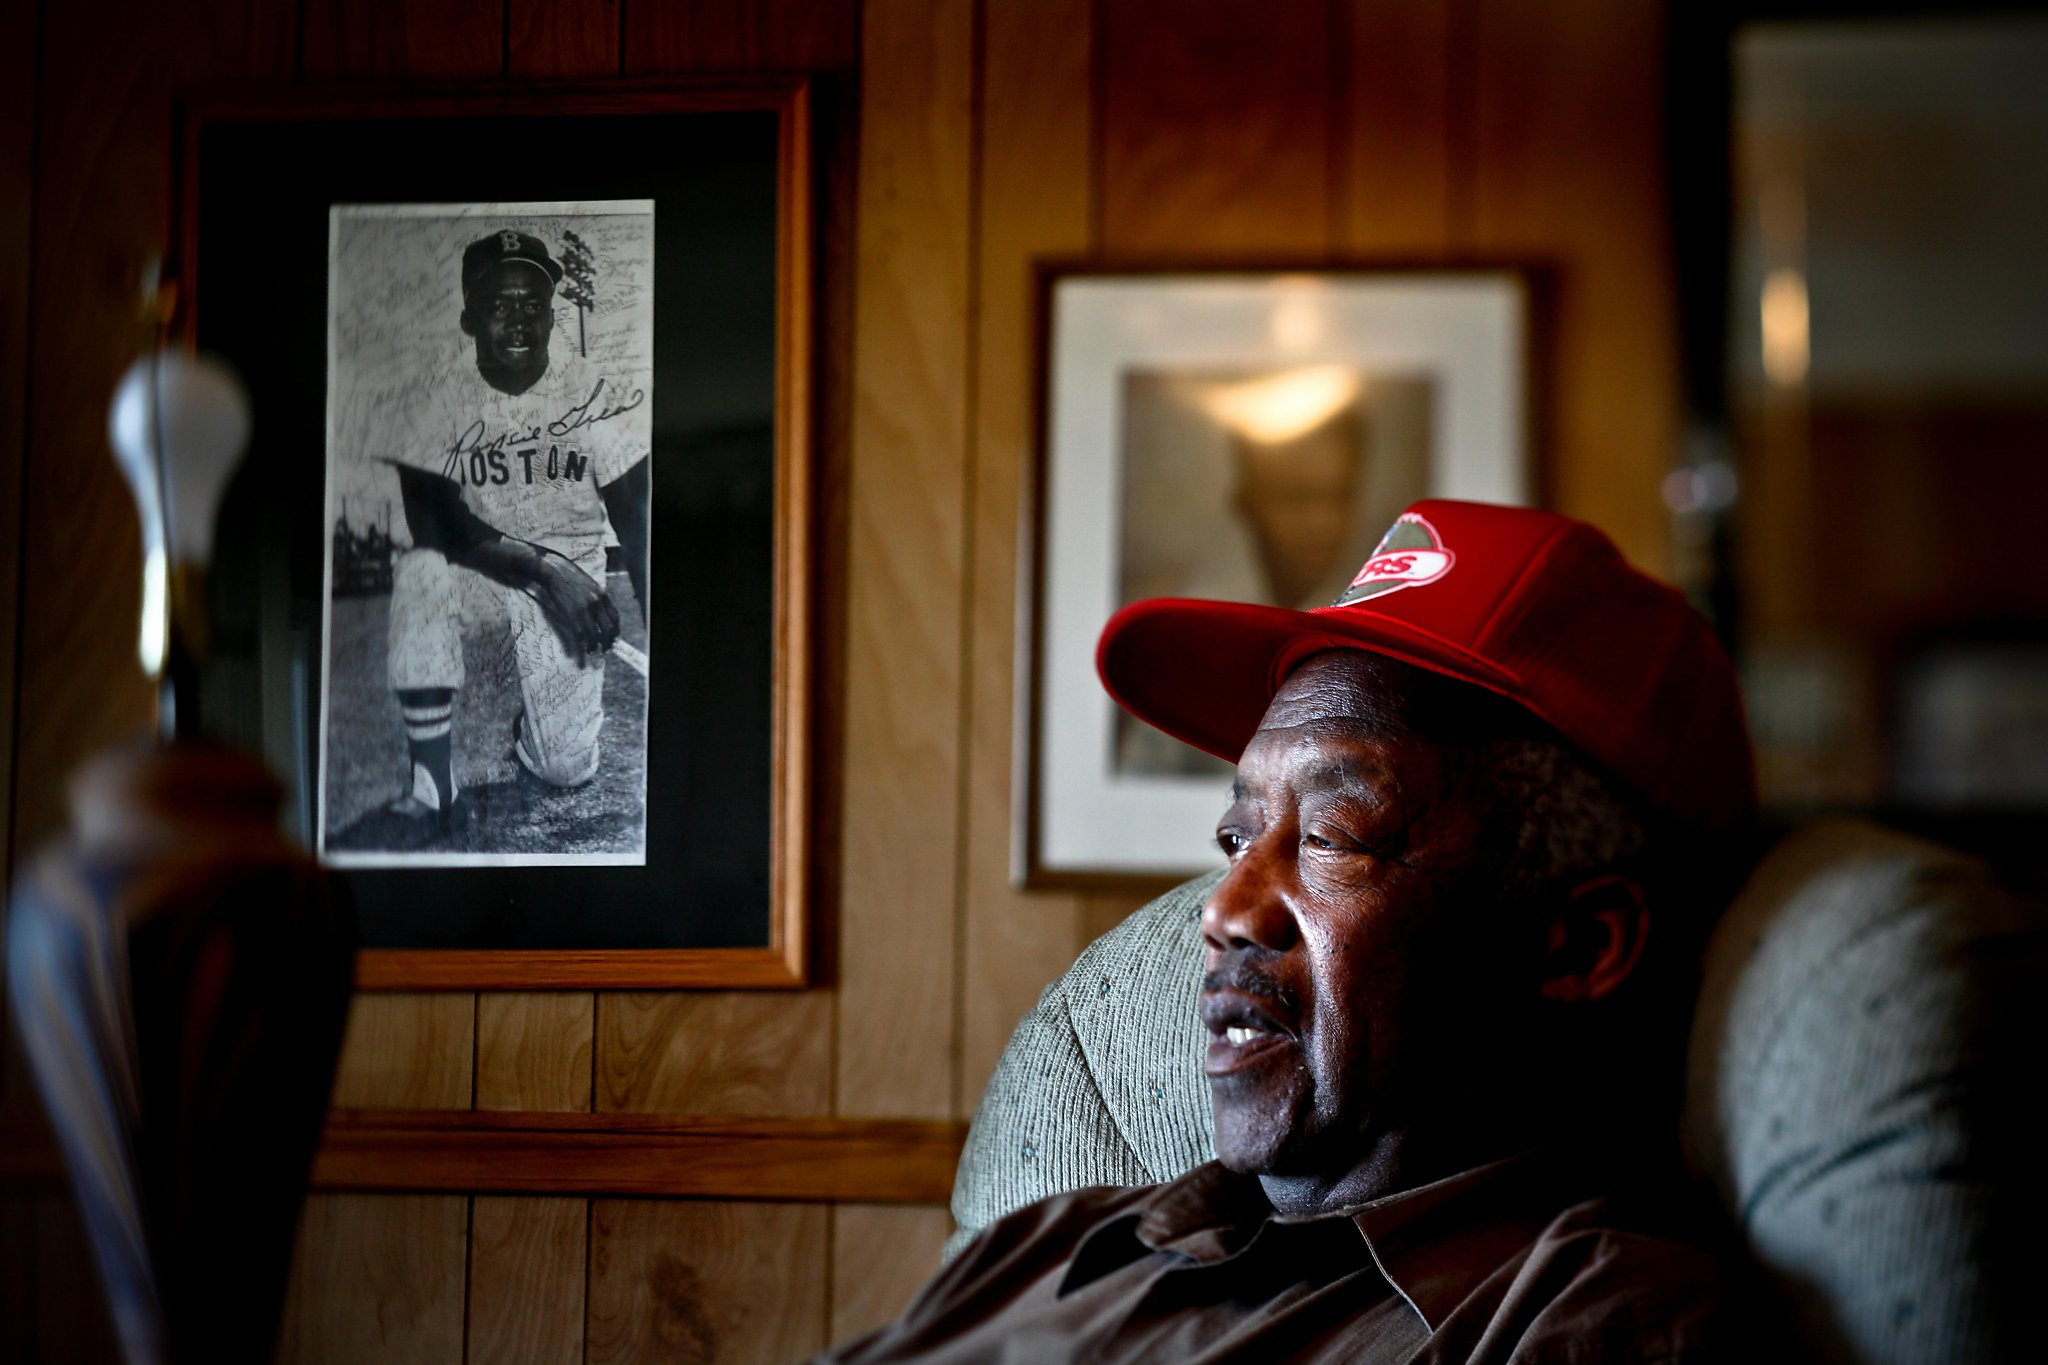 Pumpsie Green, 1st black player on Boston Red Sox, dies at 85